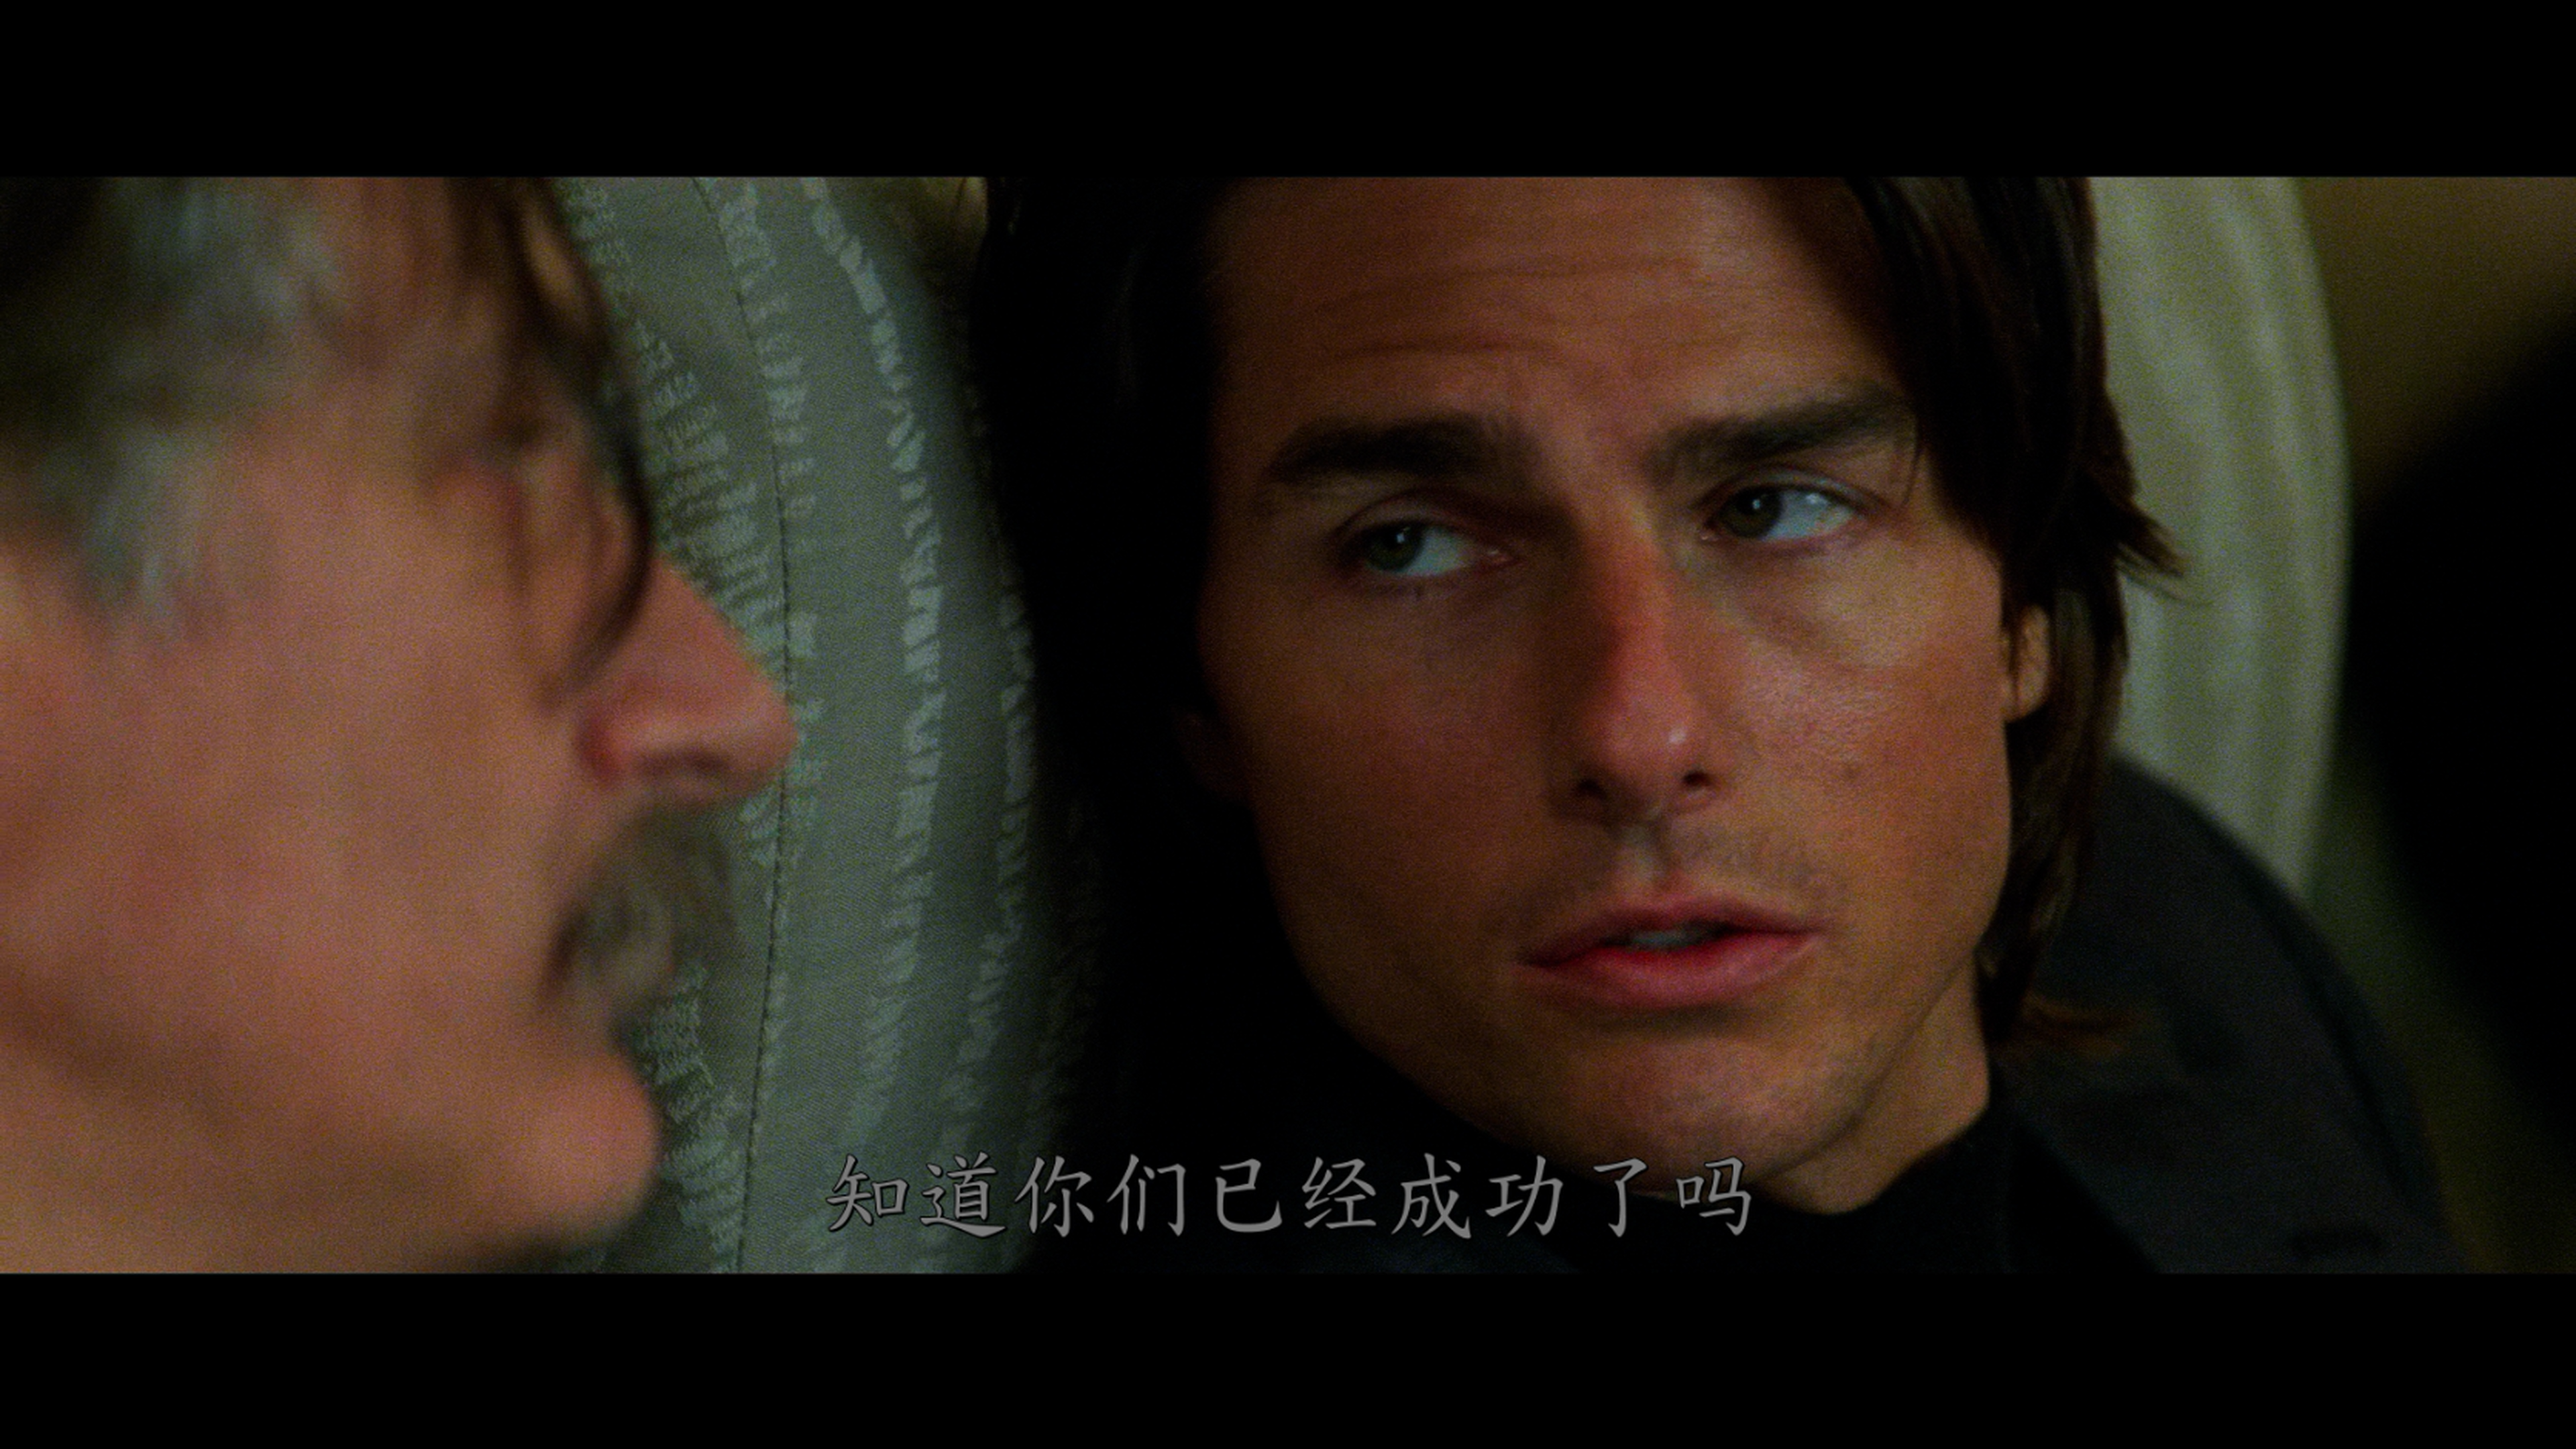 碟中谍Ⅱ 碟中谍2 [DIY次世代国配+简繁  简繁英双语字幕+国配字幕]杜比视界 Mission Impossible II 2000 UHD Blu-Ray 2160p HEVC TrueHD 5 1-lingf@OurBits[60.91GB]-2.png